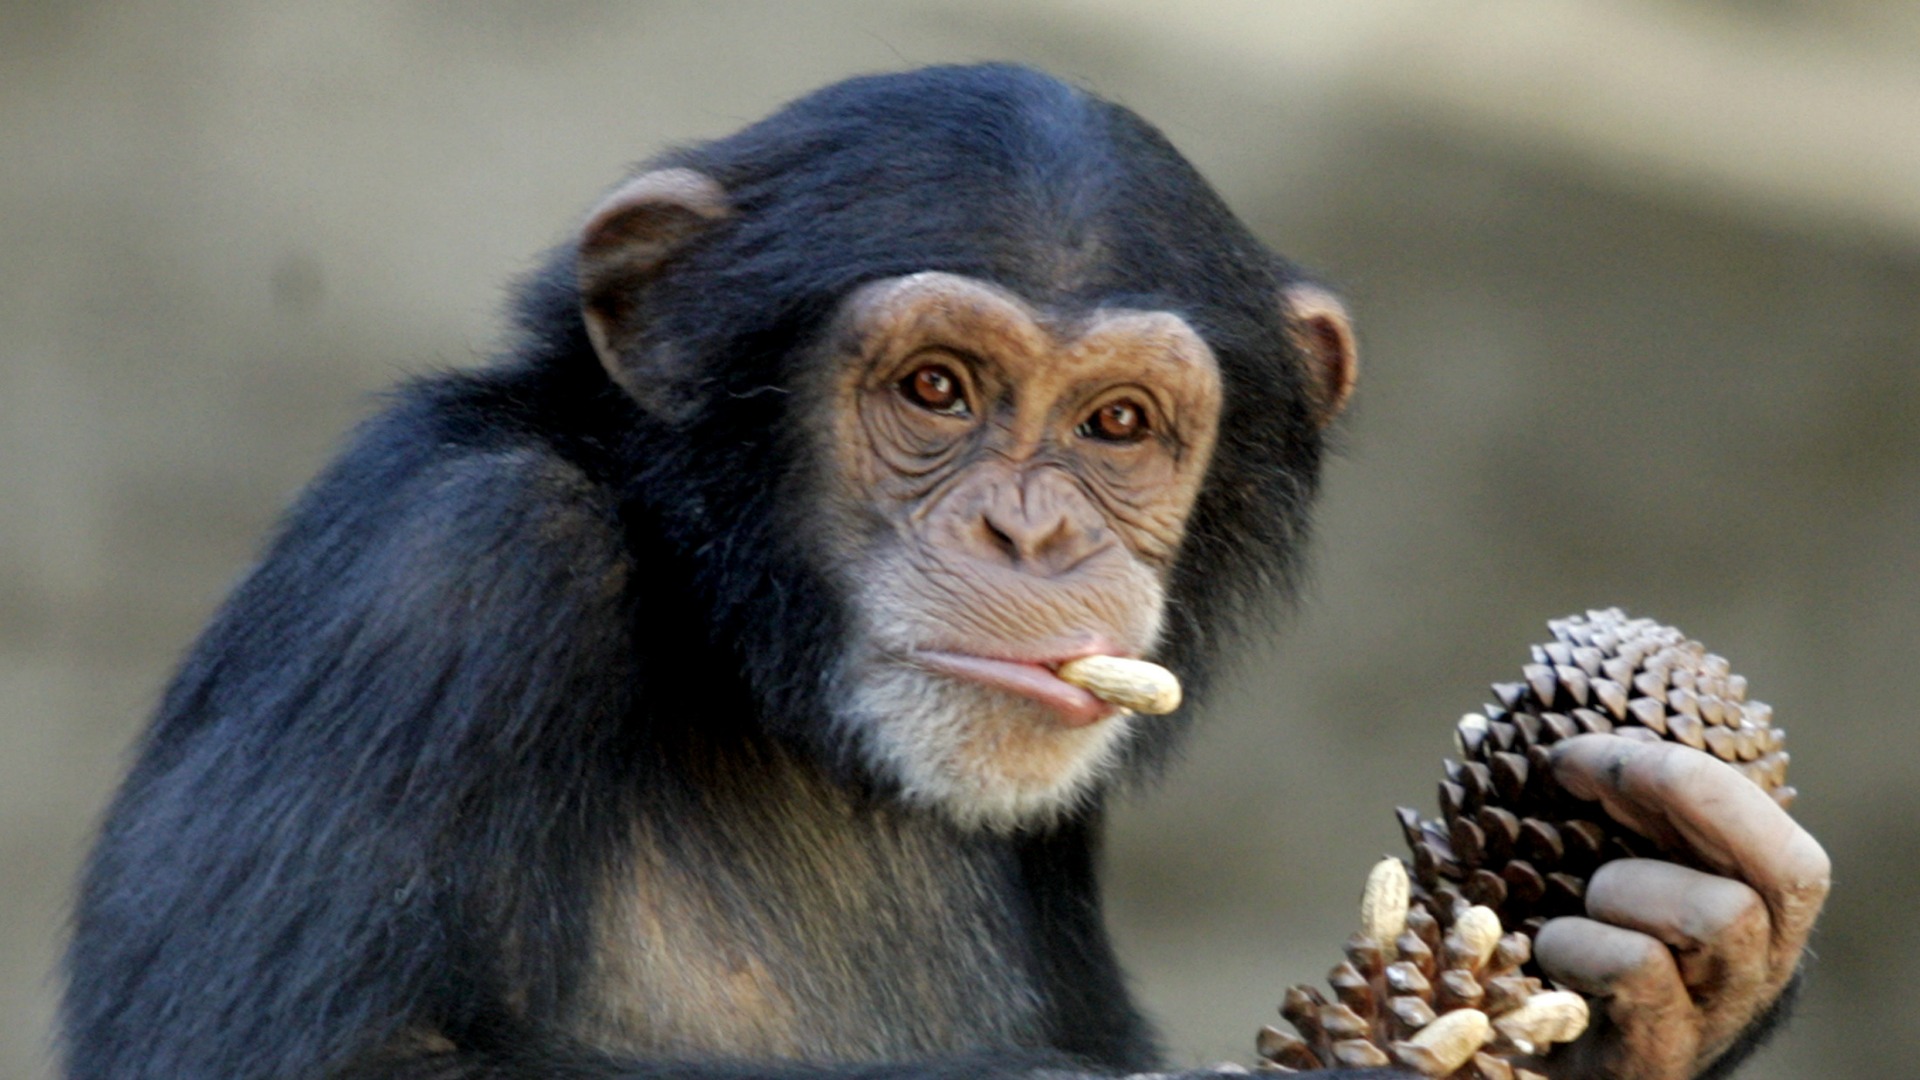 Una chimpancé, trasladada a un refugio por sufrir depresión